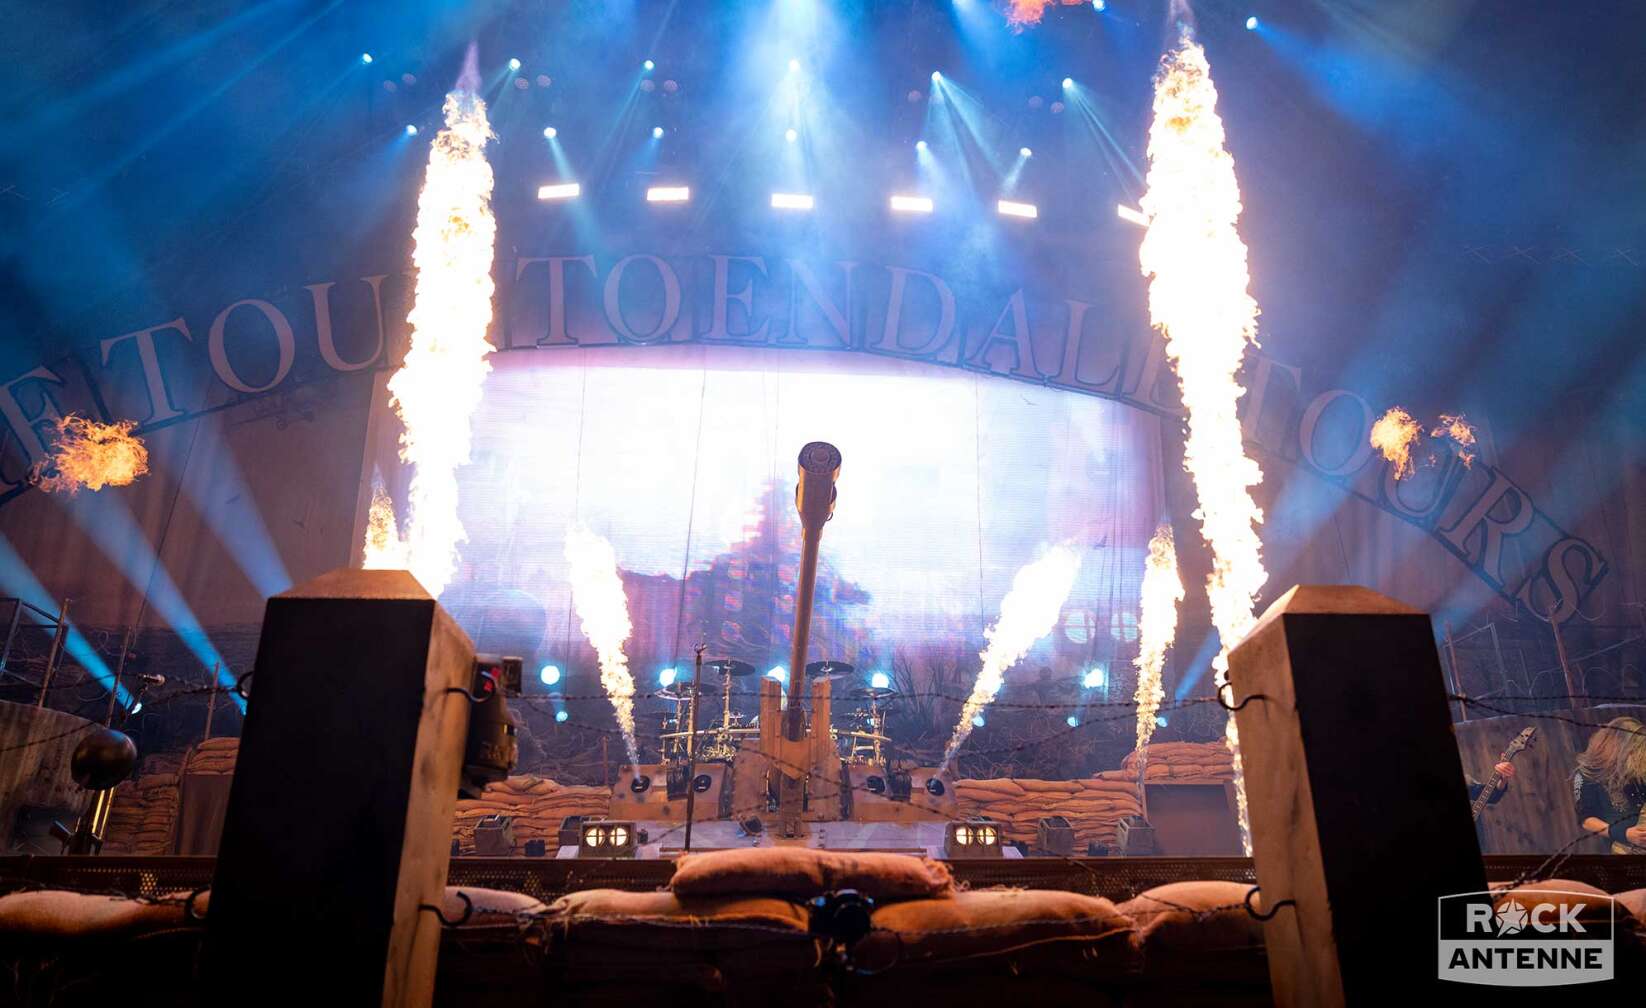 Bild vom Sabaton-Konzert, nur die Bühne mit dem Panzer und Feuersäulen auf beiden Seiten